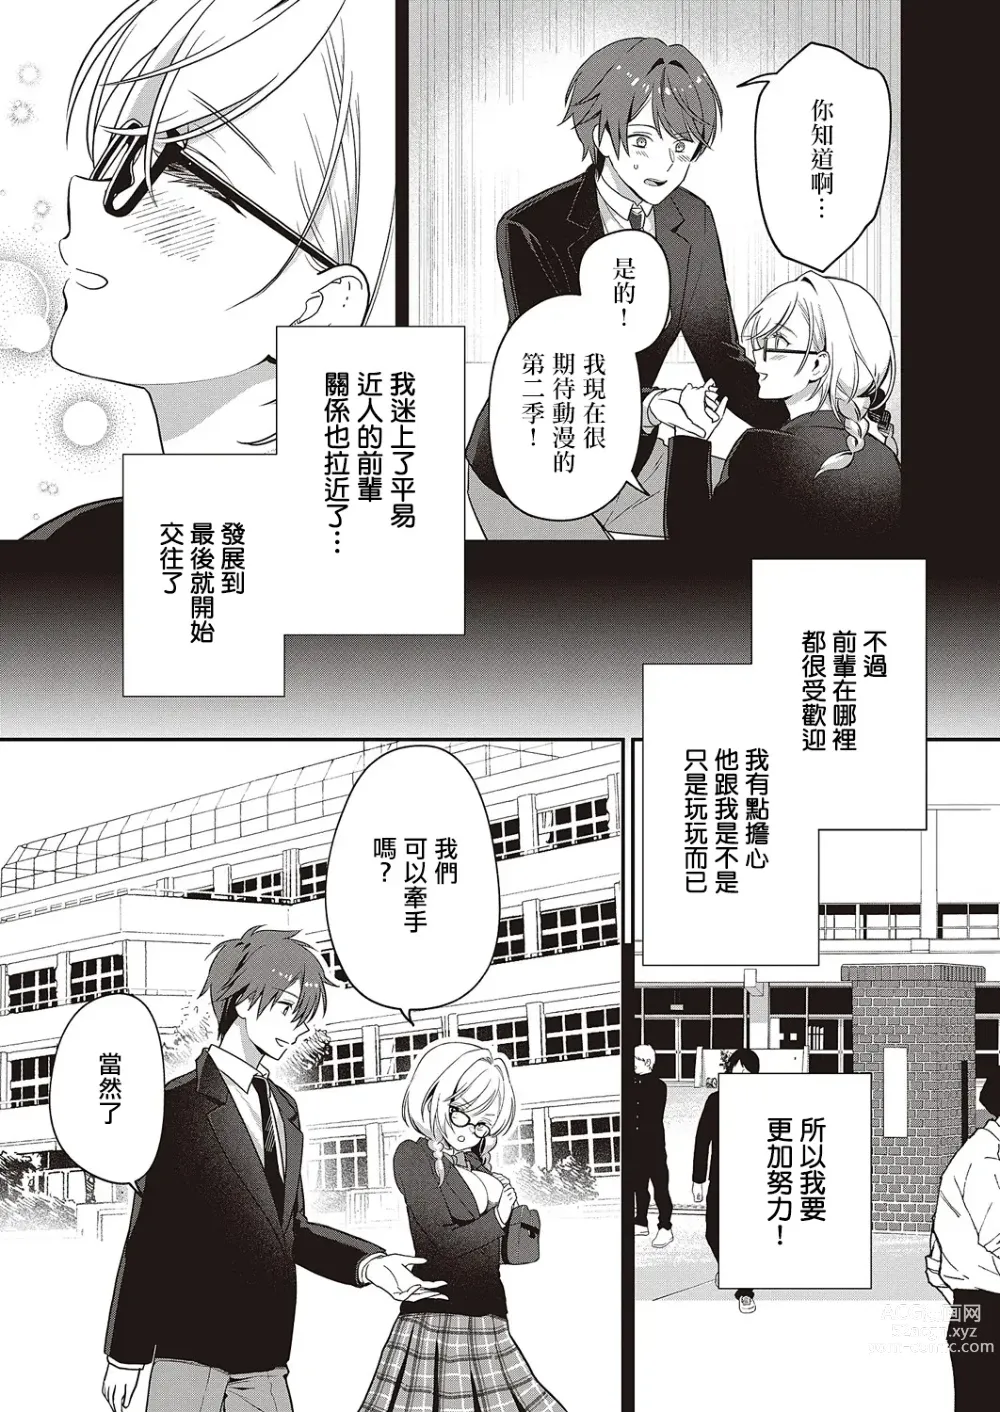 Page 5 of manga Ganbaru Kanojo wa Okirai desu ka?